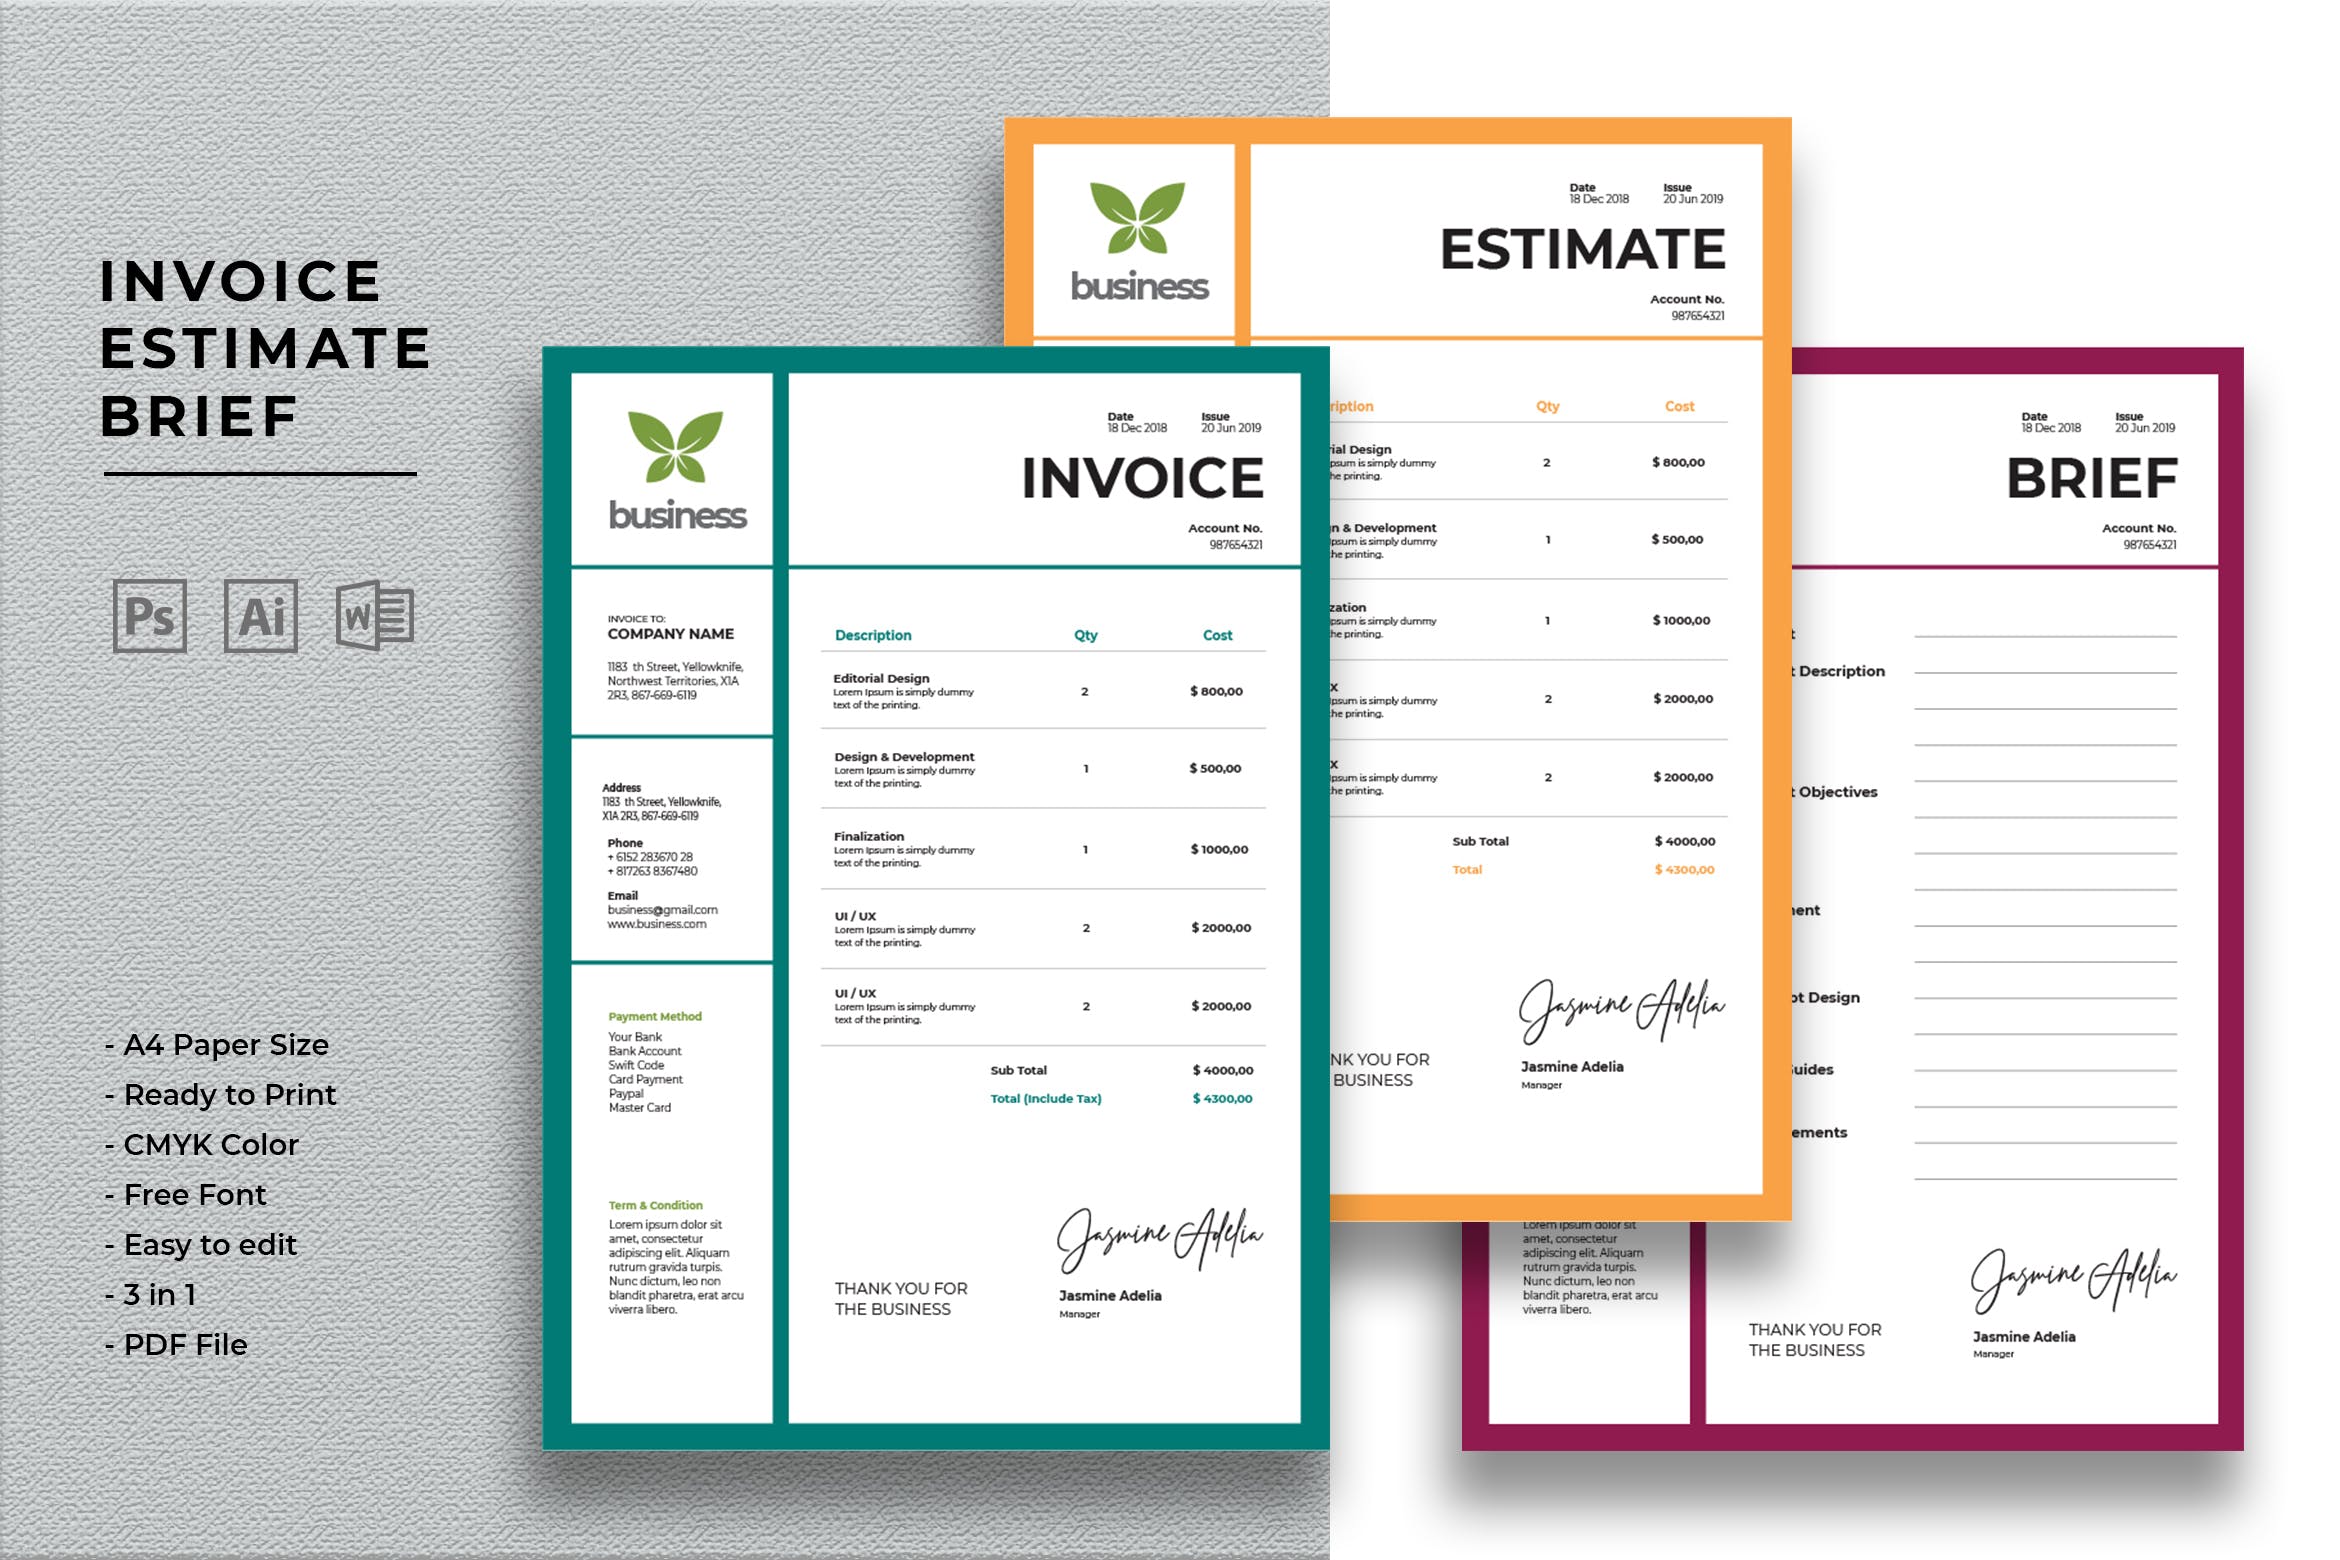 企业发票/预算/报价表标准模板素材 Invoice Estimate Brief插图